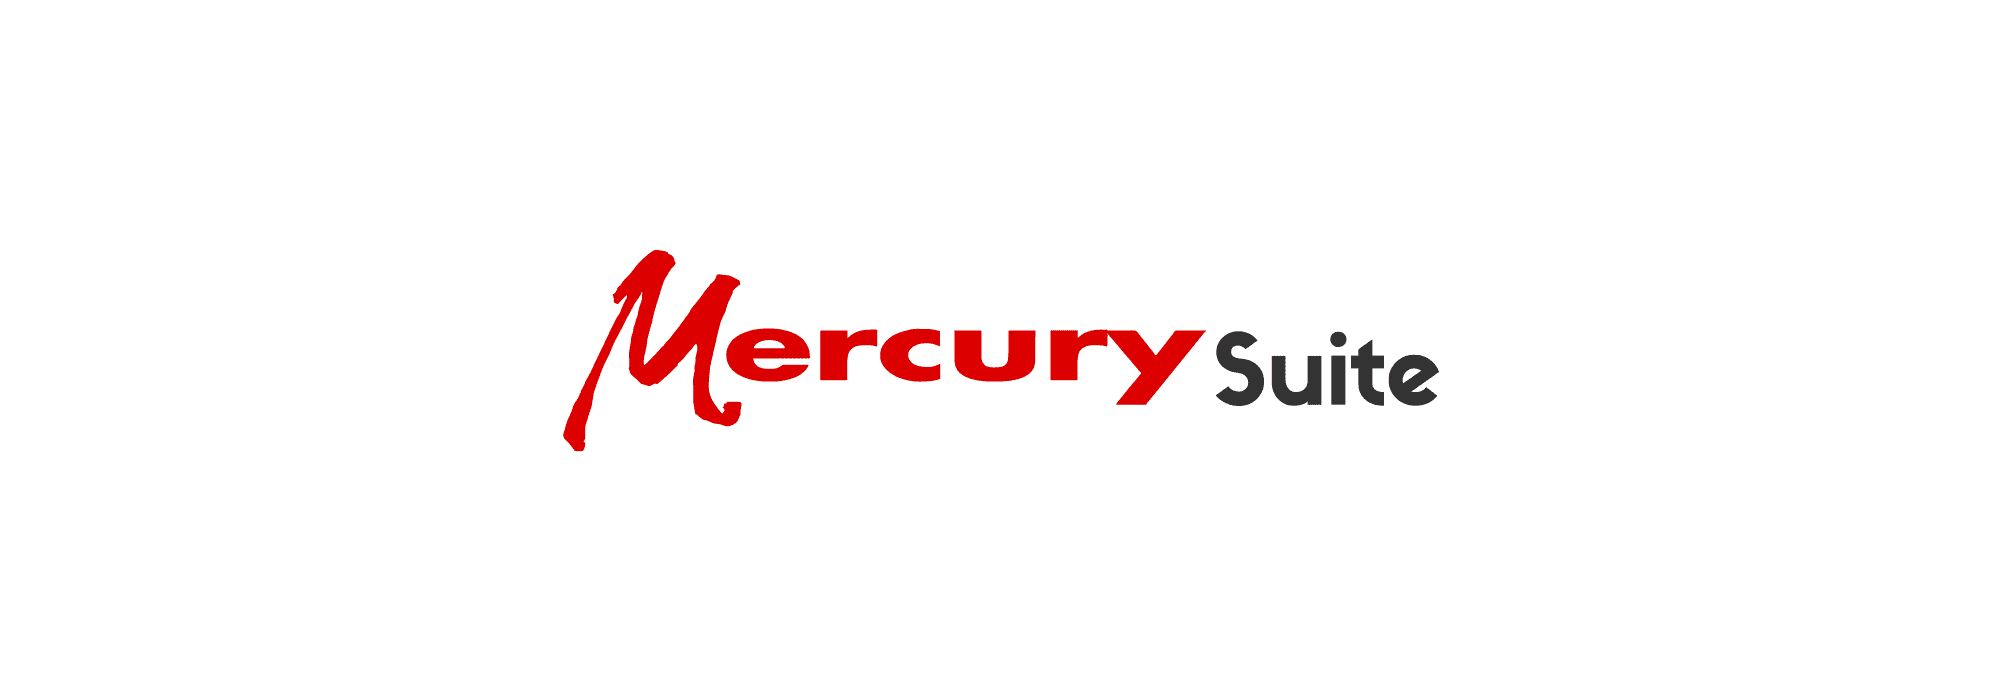 Mercury Suite